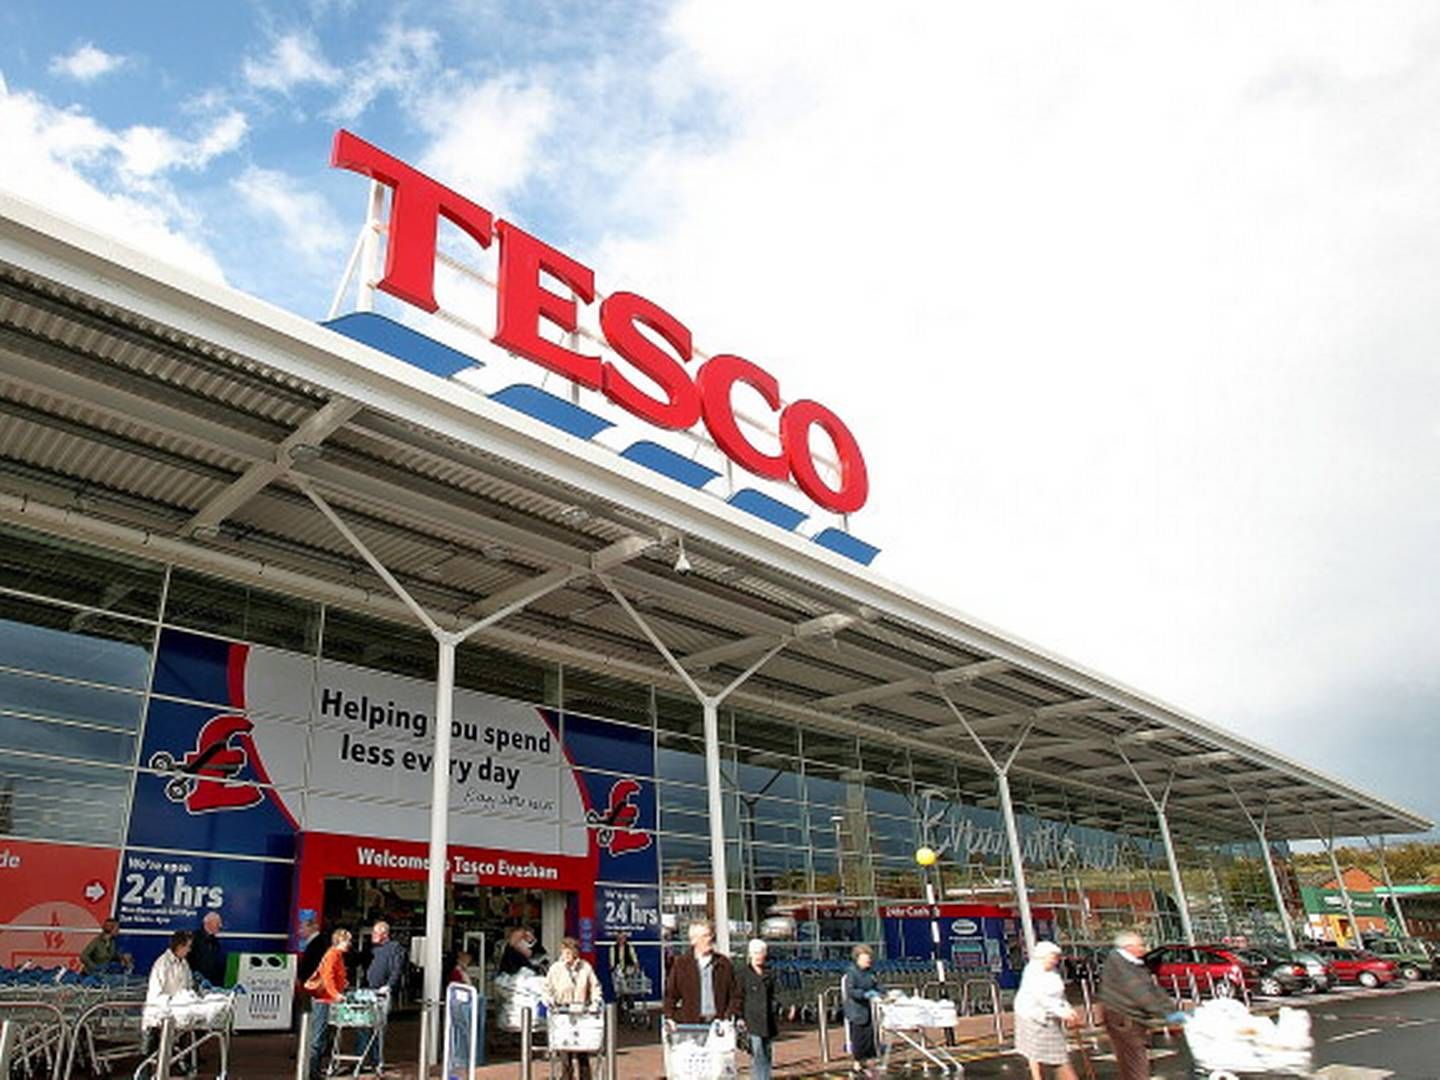 Storbritannien plages af butikstyverier og det har fået næste 90 topchefer, herunder fra Tesco, til sende et fælles opråb til politikerne.